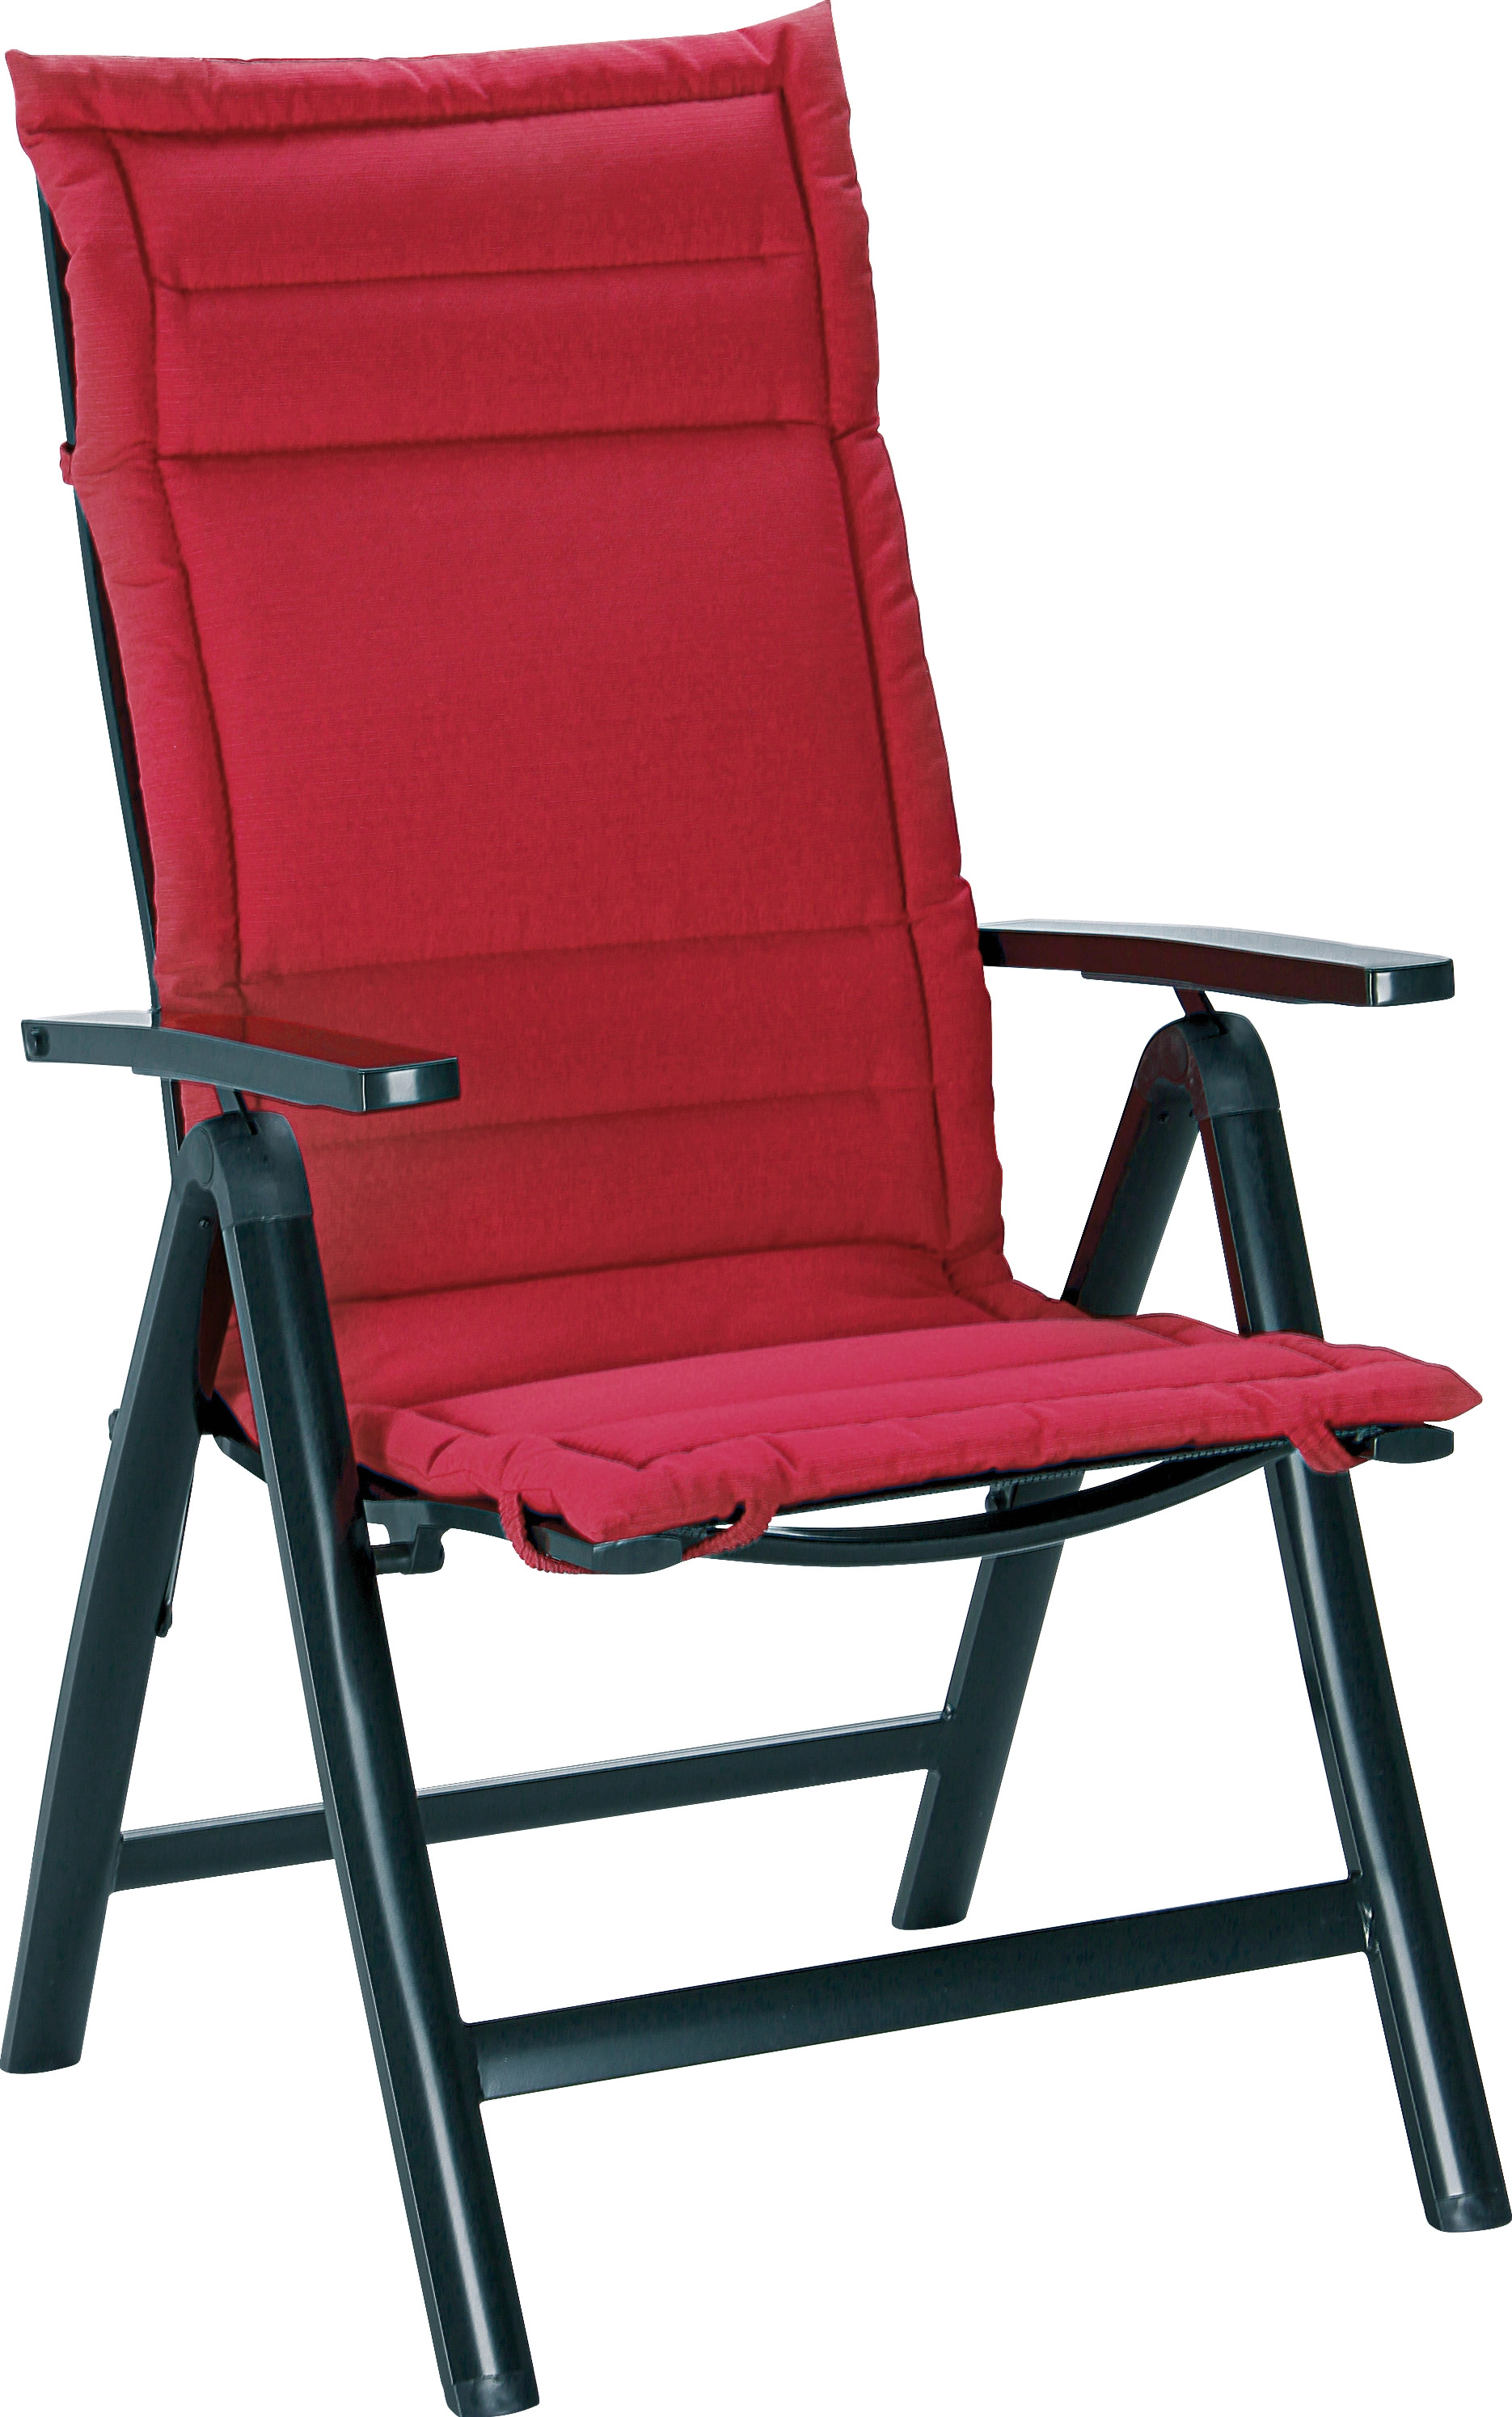 Sitzkissen 120 cm x 50 cm x 4 cm D.1827 Rot kaufen bei OBI